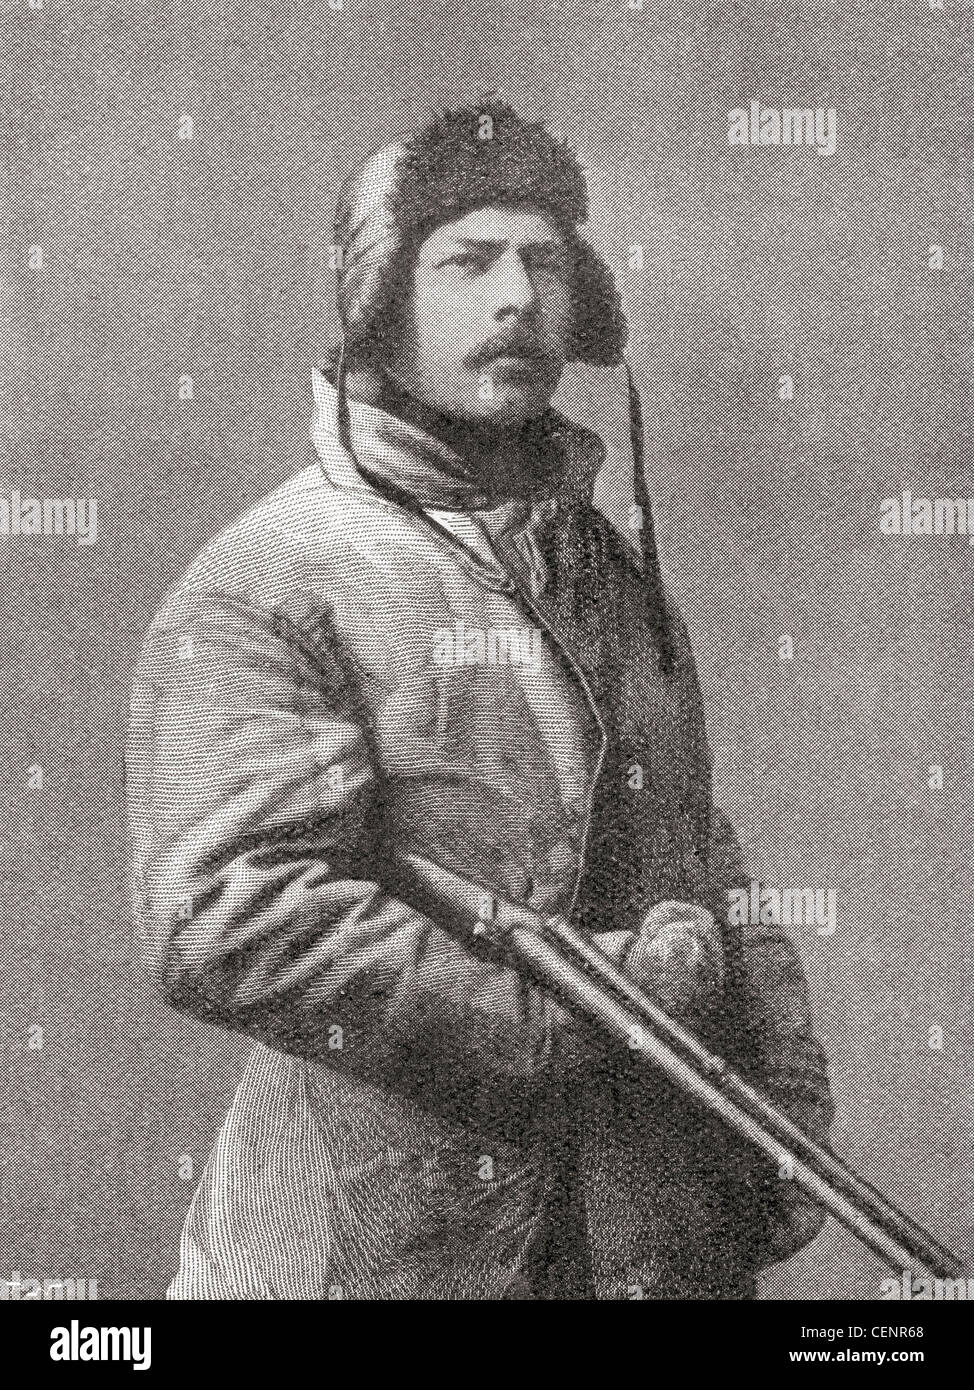 Carsten Egeberg Borchgrevink, 1864 - 1934. Anglo-Norwegian et pionnier de l'explorateur polaire antarctique moderne billet. Banque D'Images